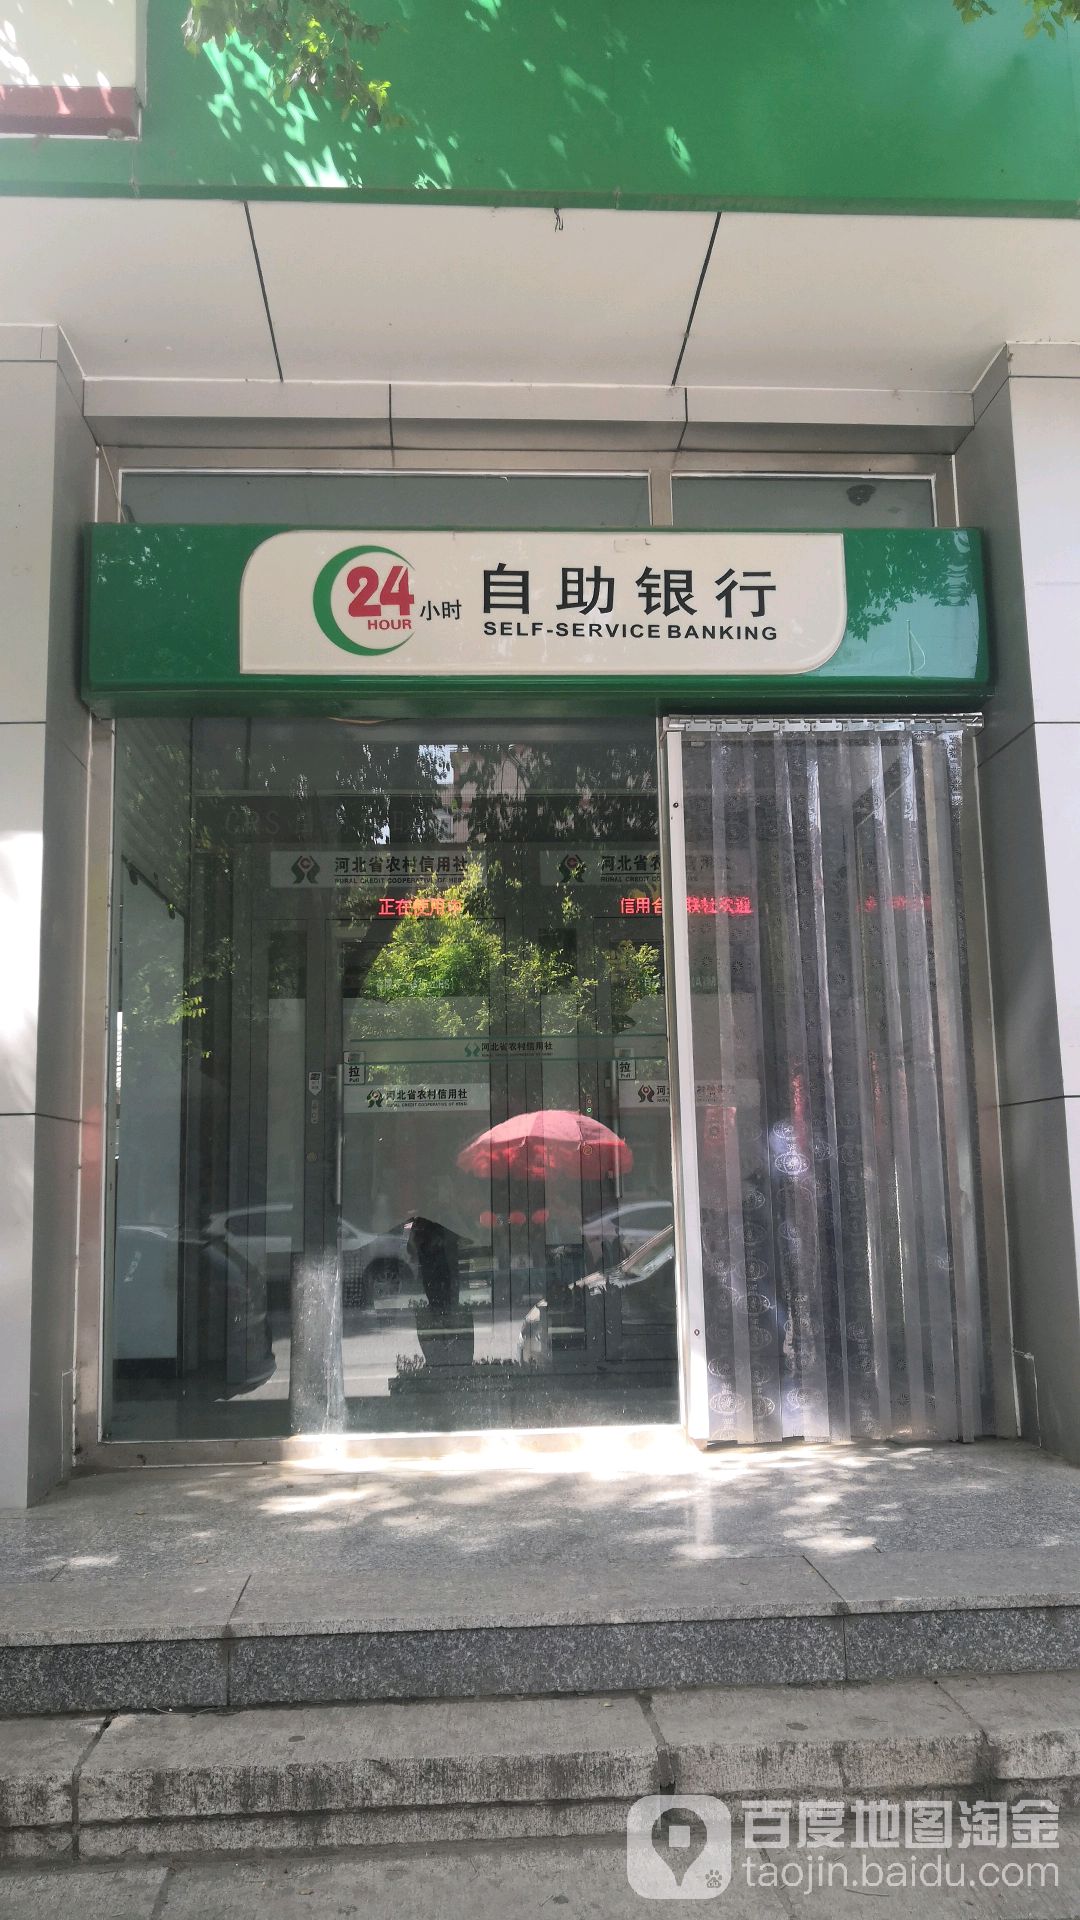 農村商業銀行24小時自助銀行(赤城縣城關分社)